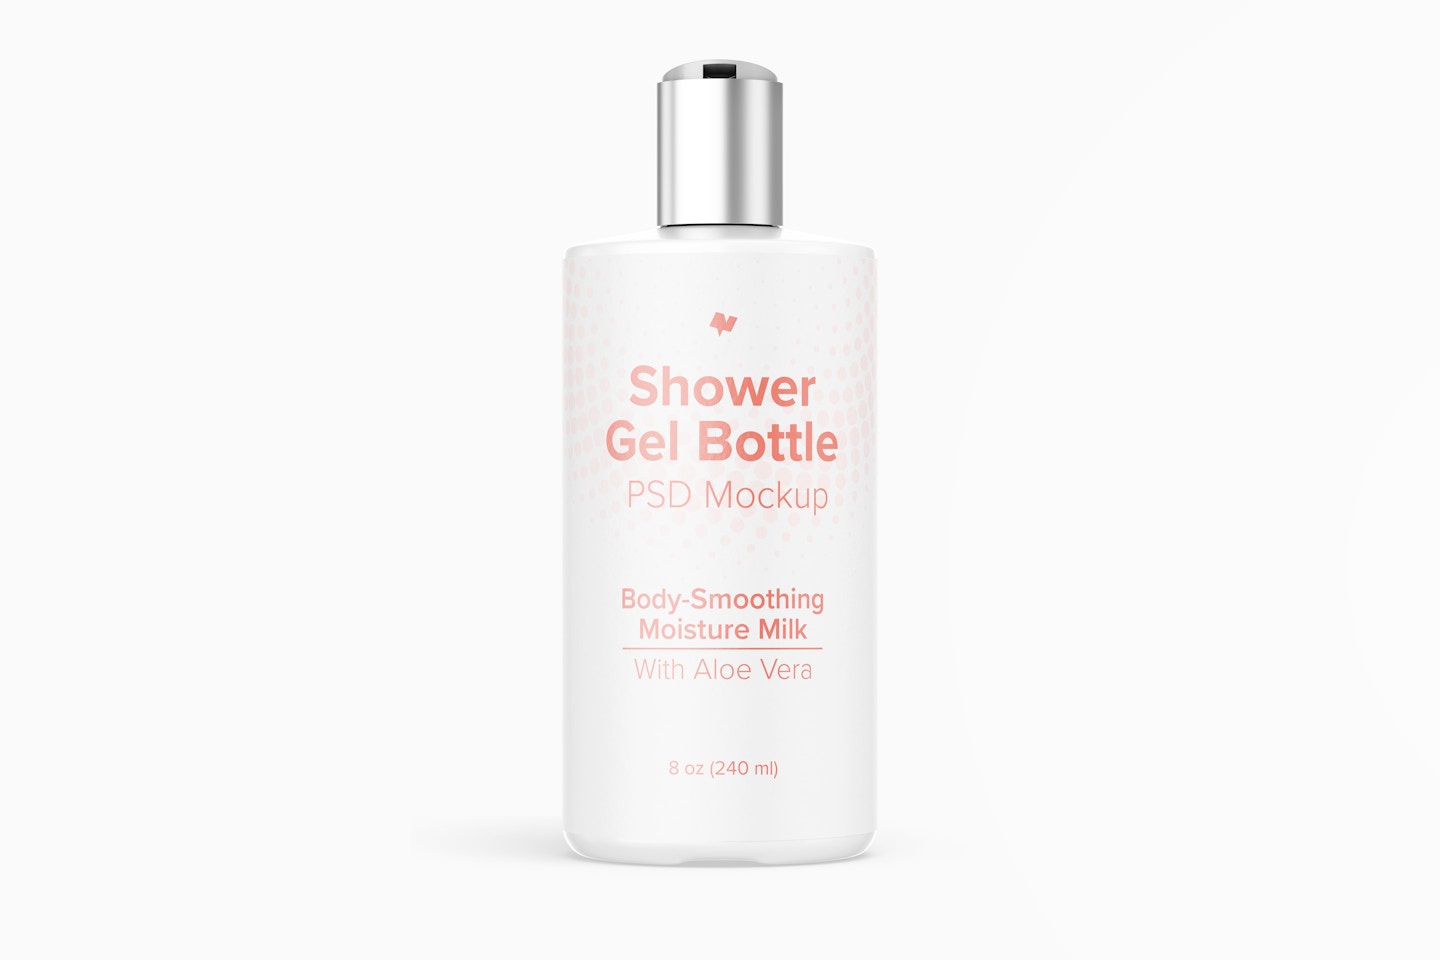 8 oz Shower Gel Bottle Mockup, Front View